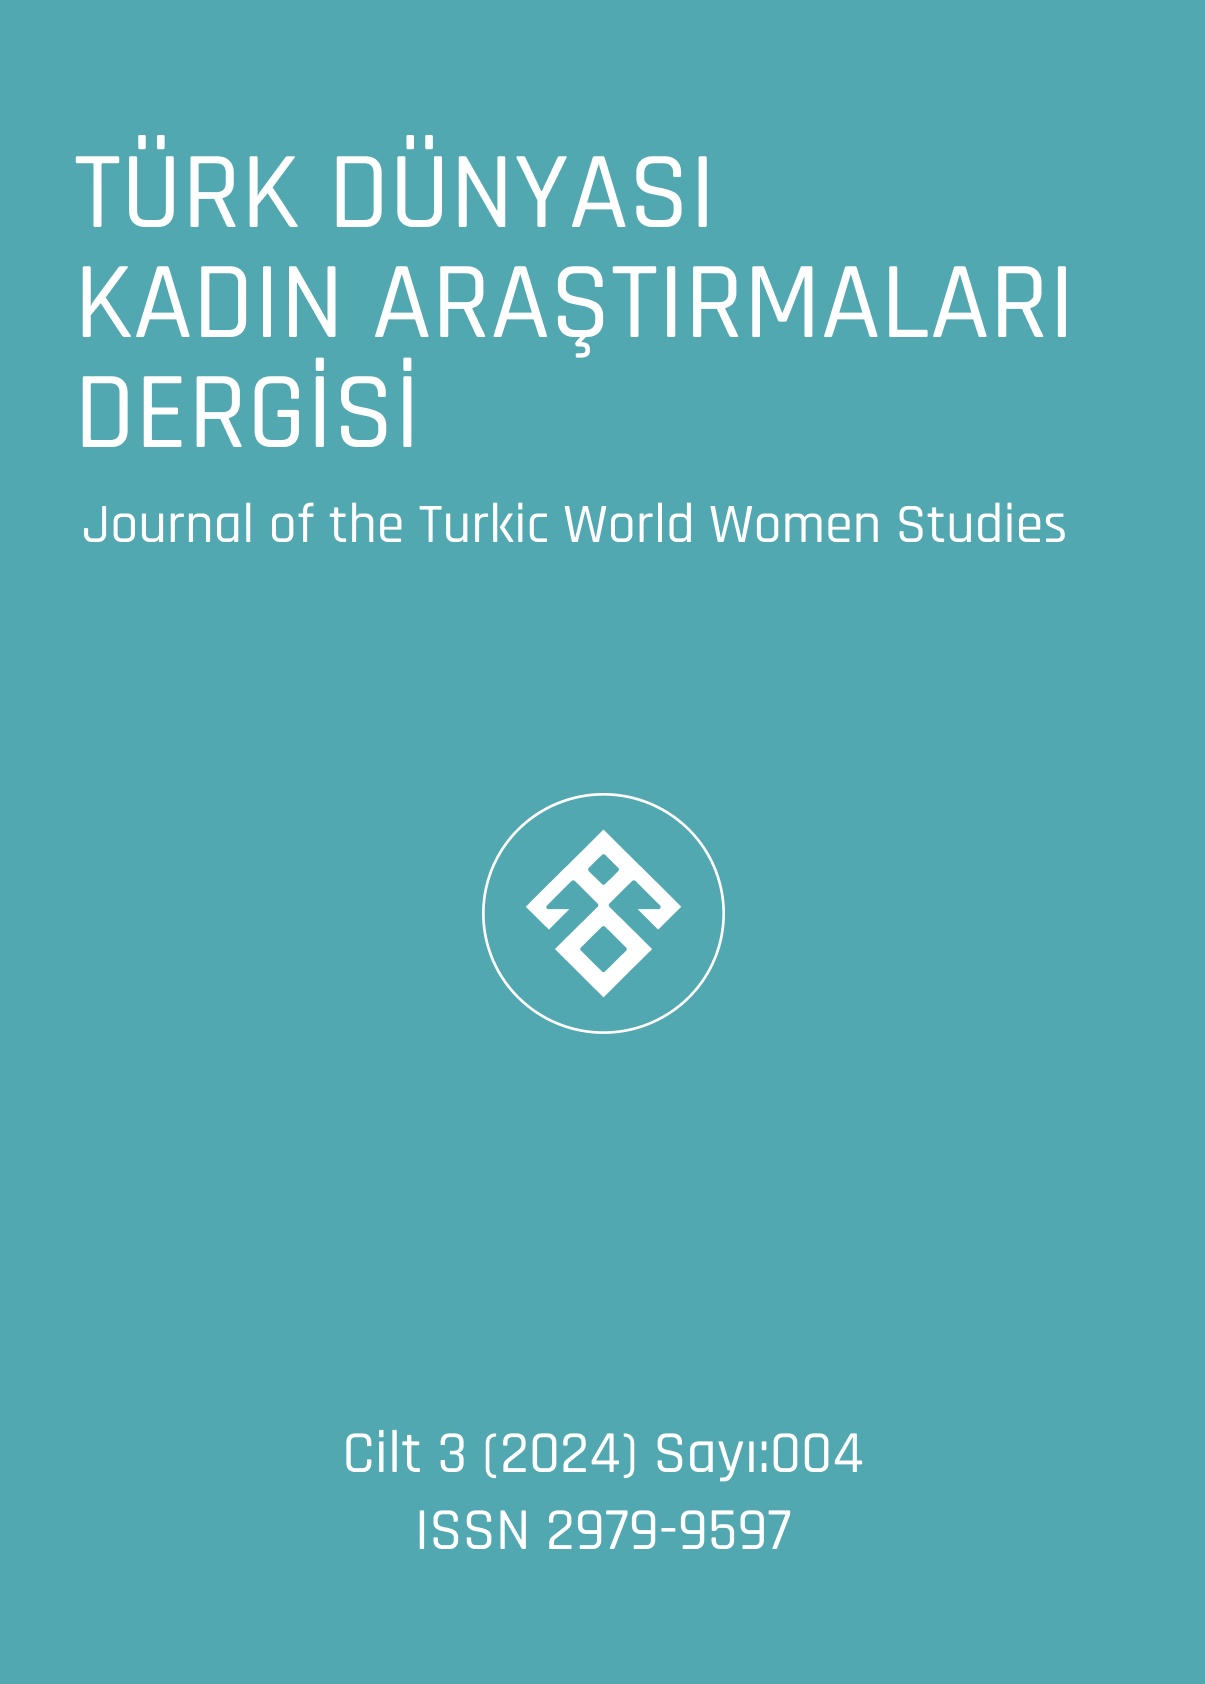 					Cilt 3 Sayı 4 (2024): Türk Dünyası Kadın Araştırmaları Dergisi Gör
				